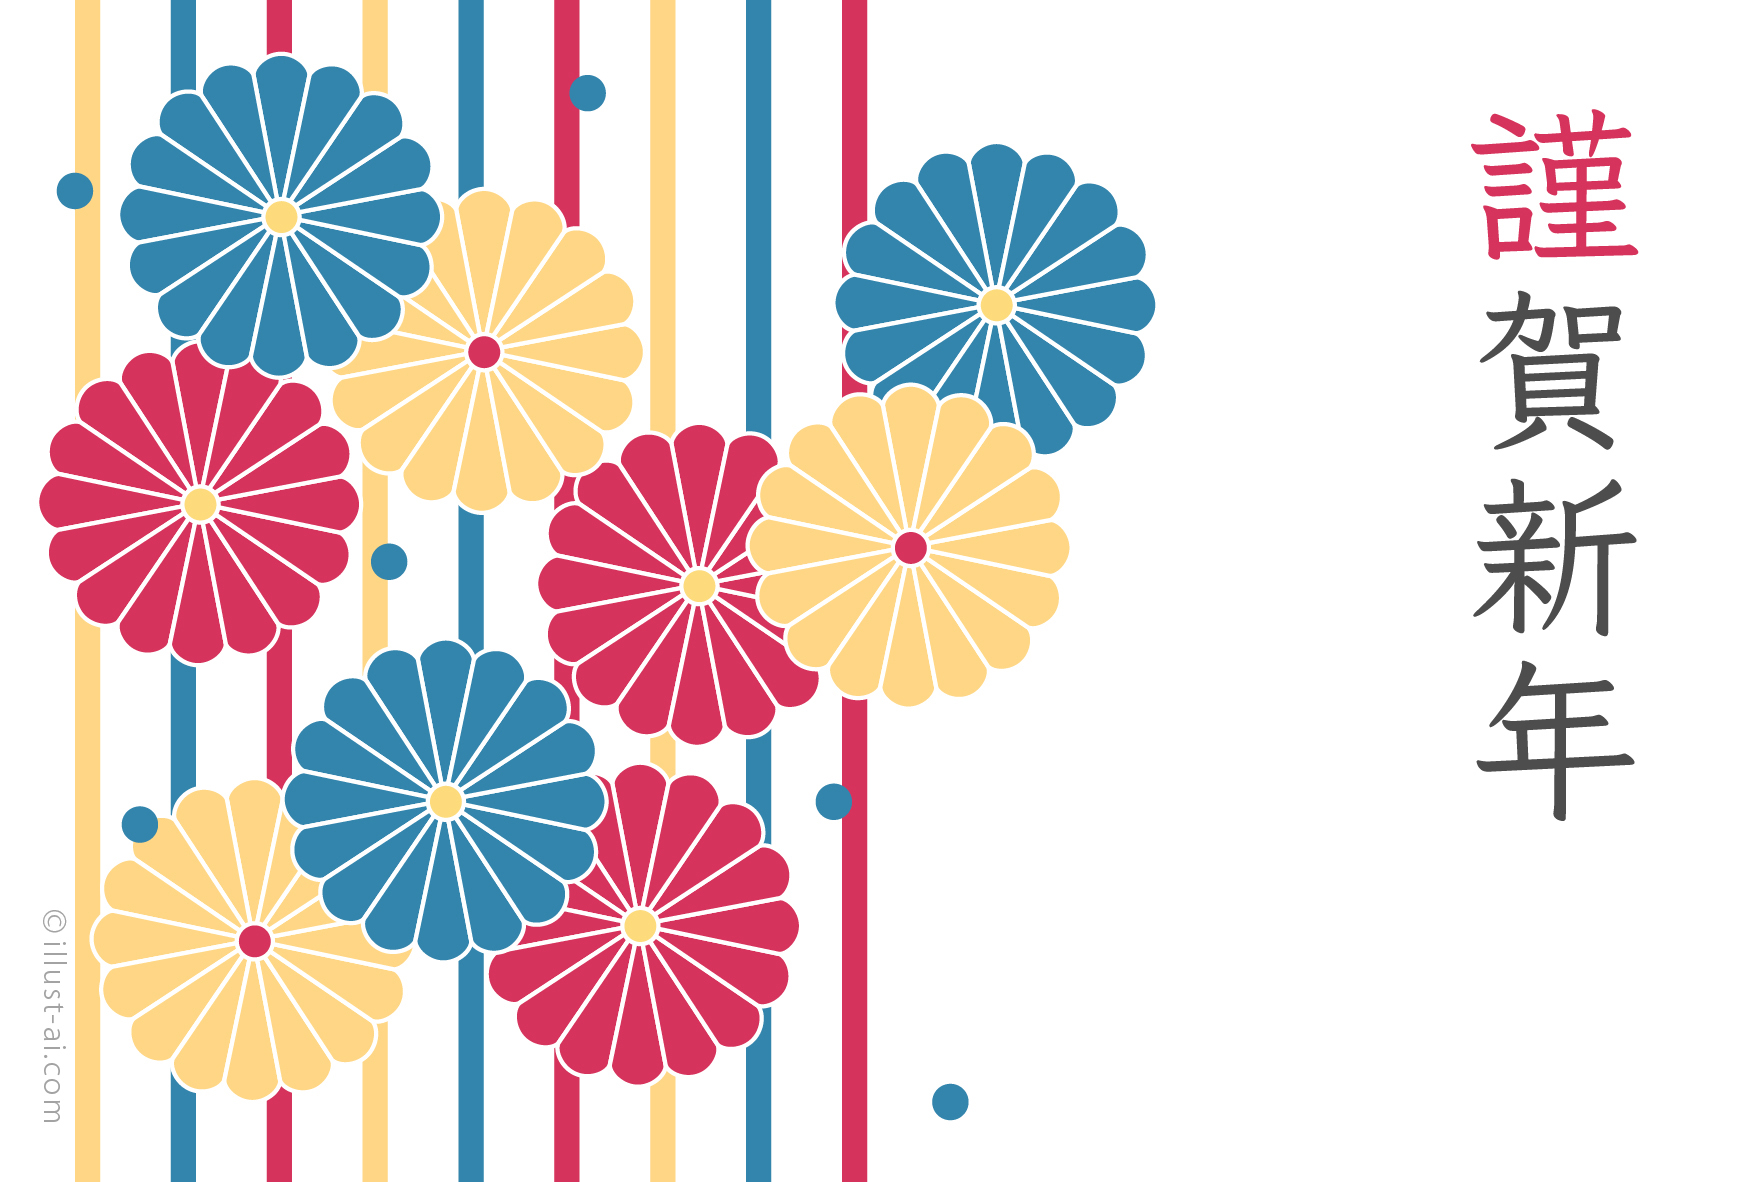 年賀状 寅年 レトロポップな菊の花のデザイン 年賀状22無料イラスト素材集